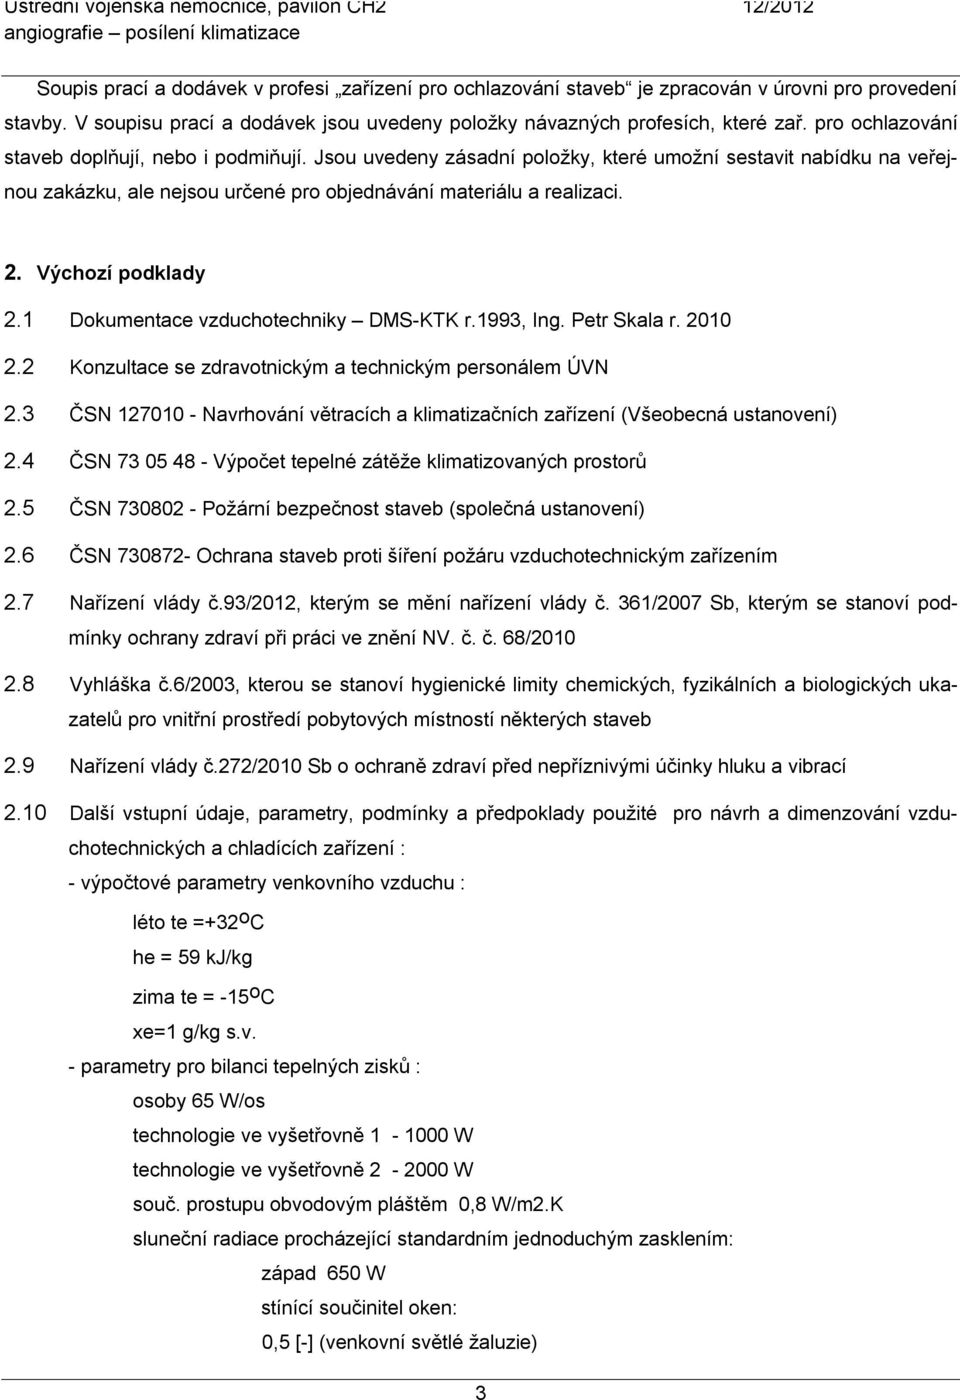 Výchozí podklady 2.1 Dokumentace vzduchotechniky DMS-KTK r.1993, Ing. Petr Skala r. 2010 2.2 Konzultace se zdravotnickým a technickým personálem ÚVN 2.